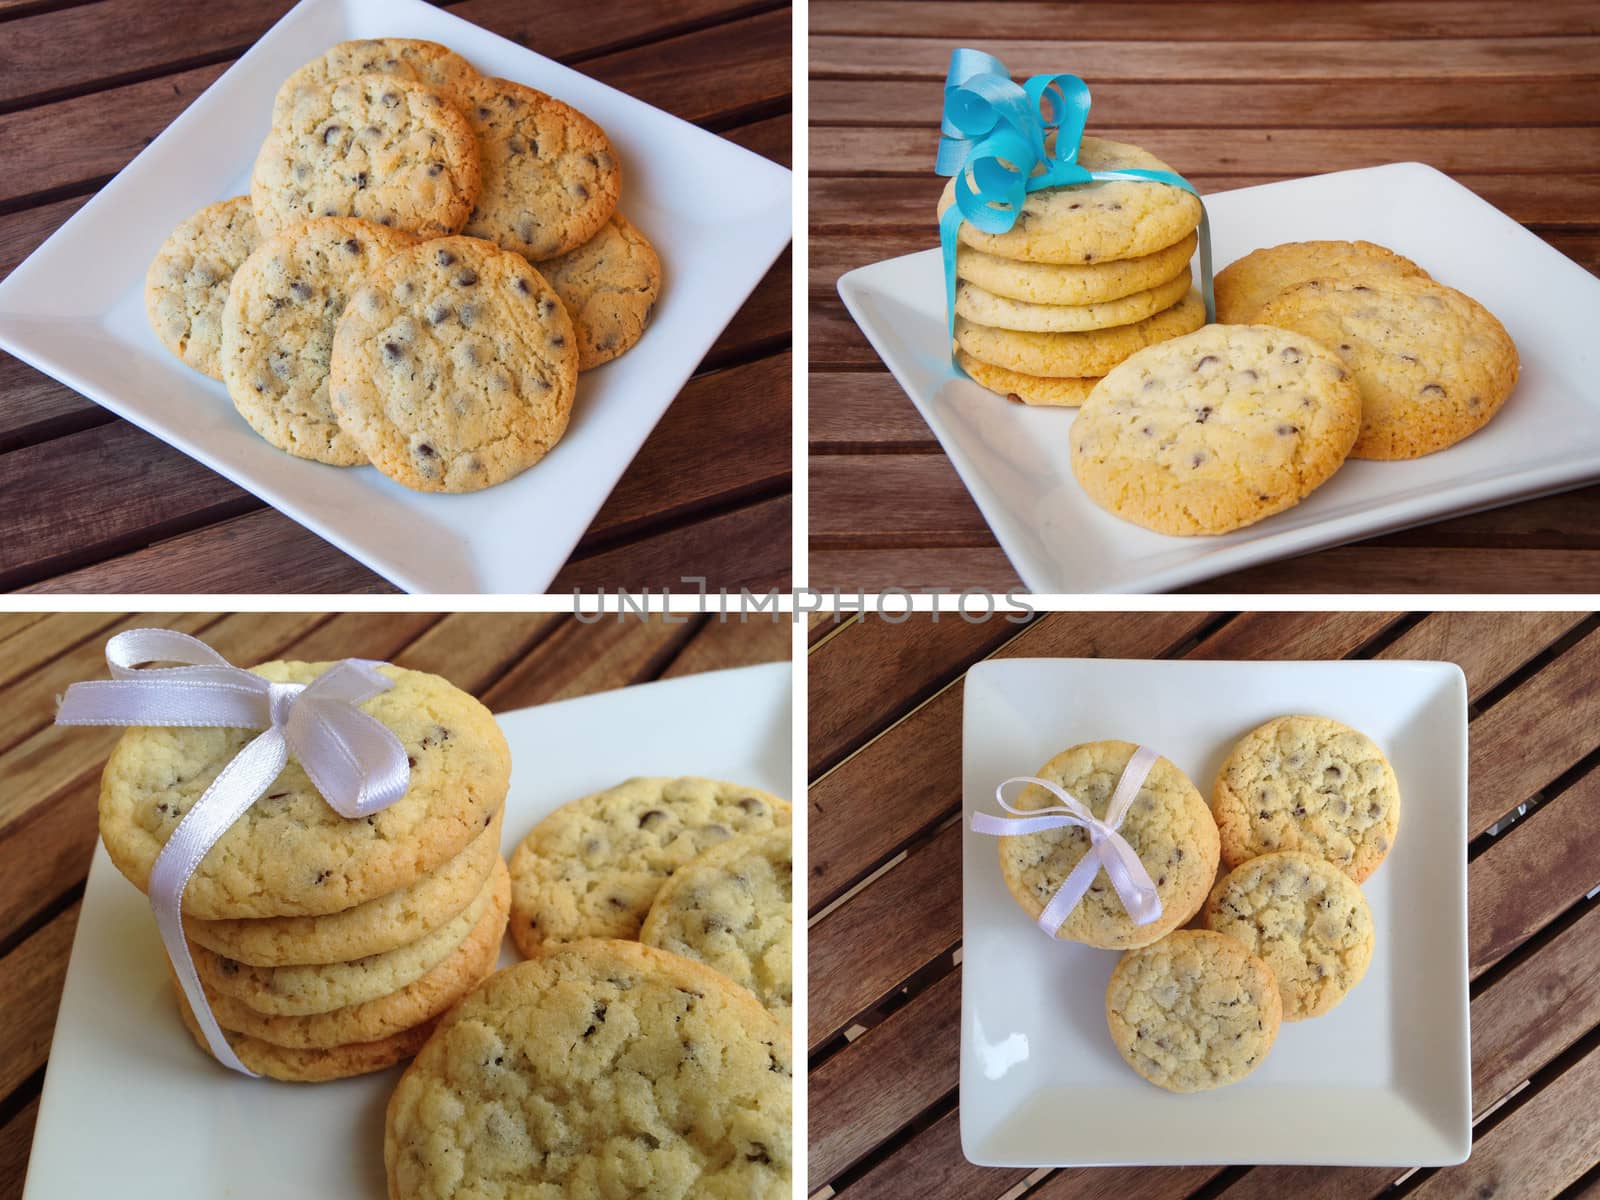 Cookies biscuits